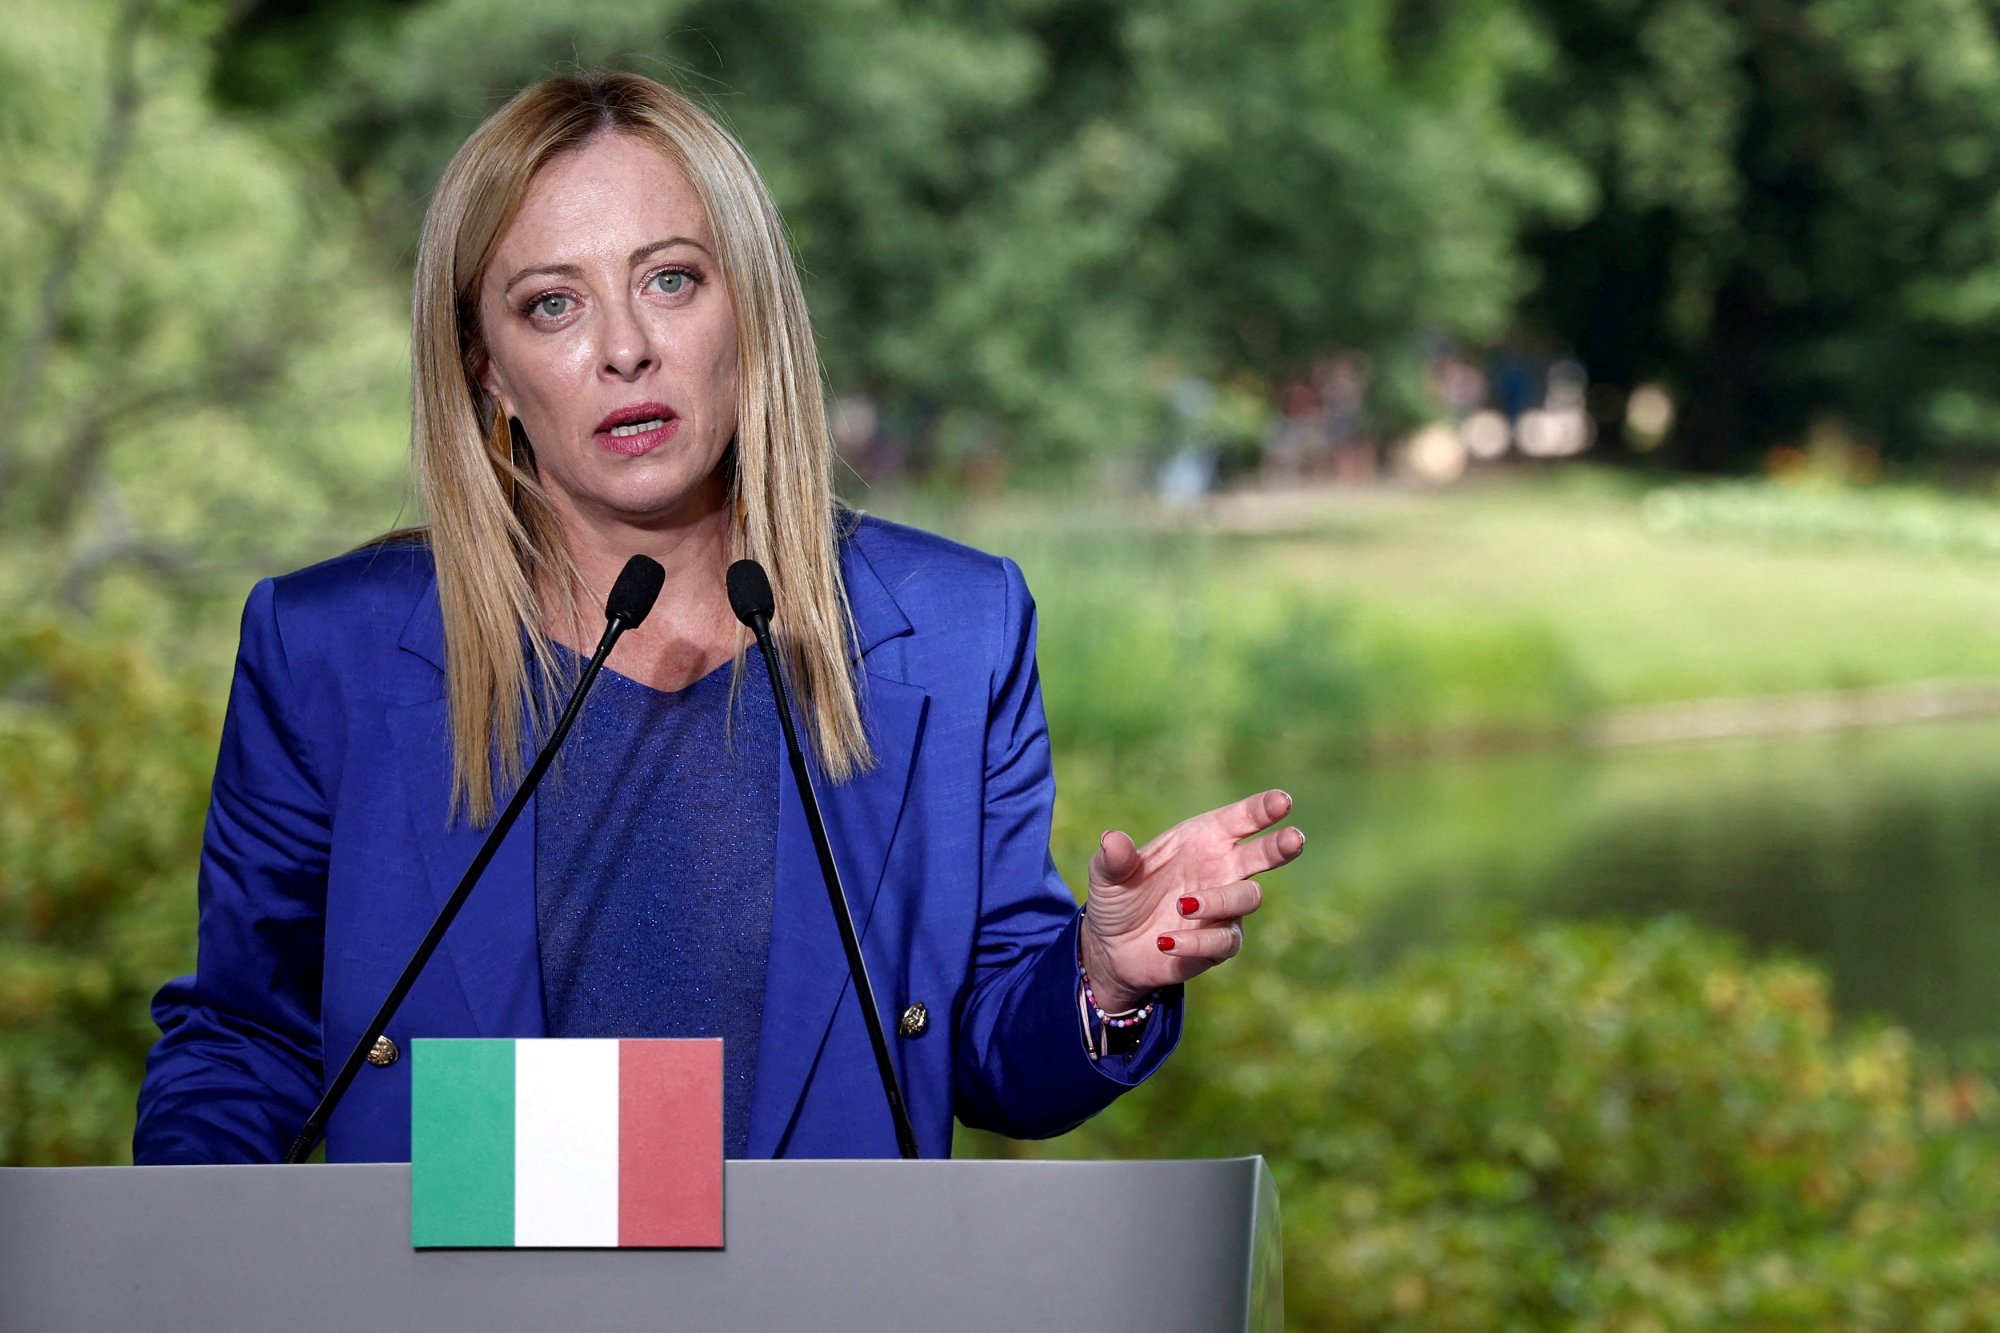 Ιταλία: Η Μελόνι μπορεί να είναι υποψήφια και στις ευρωεκλογές - «Θα αποφασίσω τελευταία στιγμή»